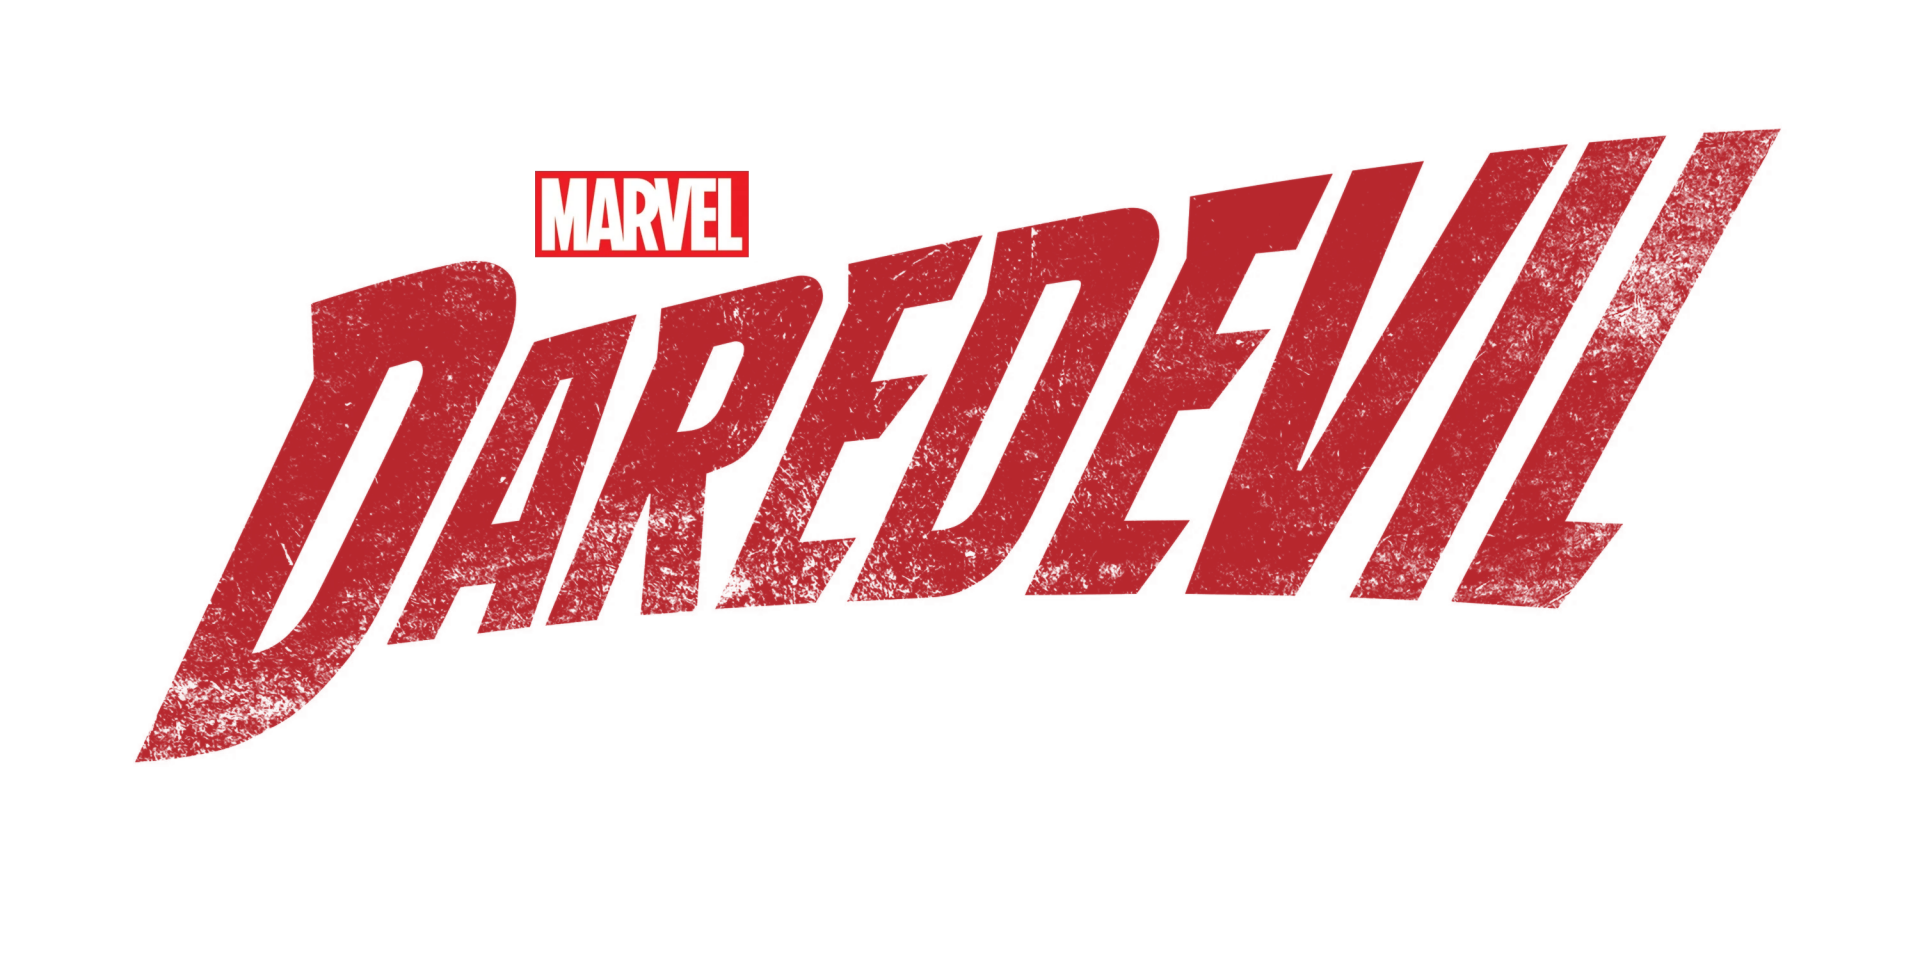 TV Show Daredevil Image